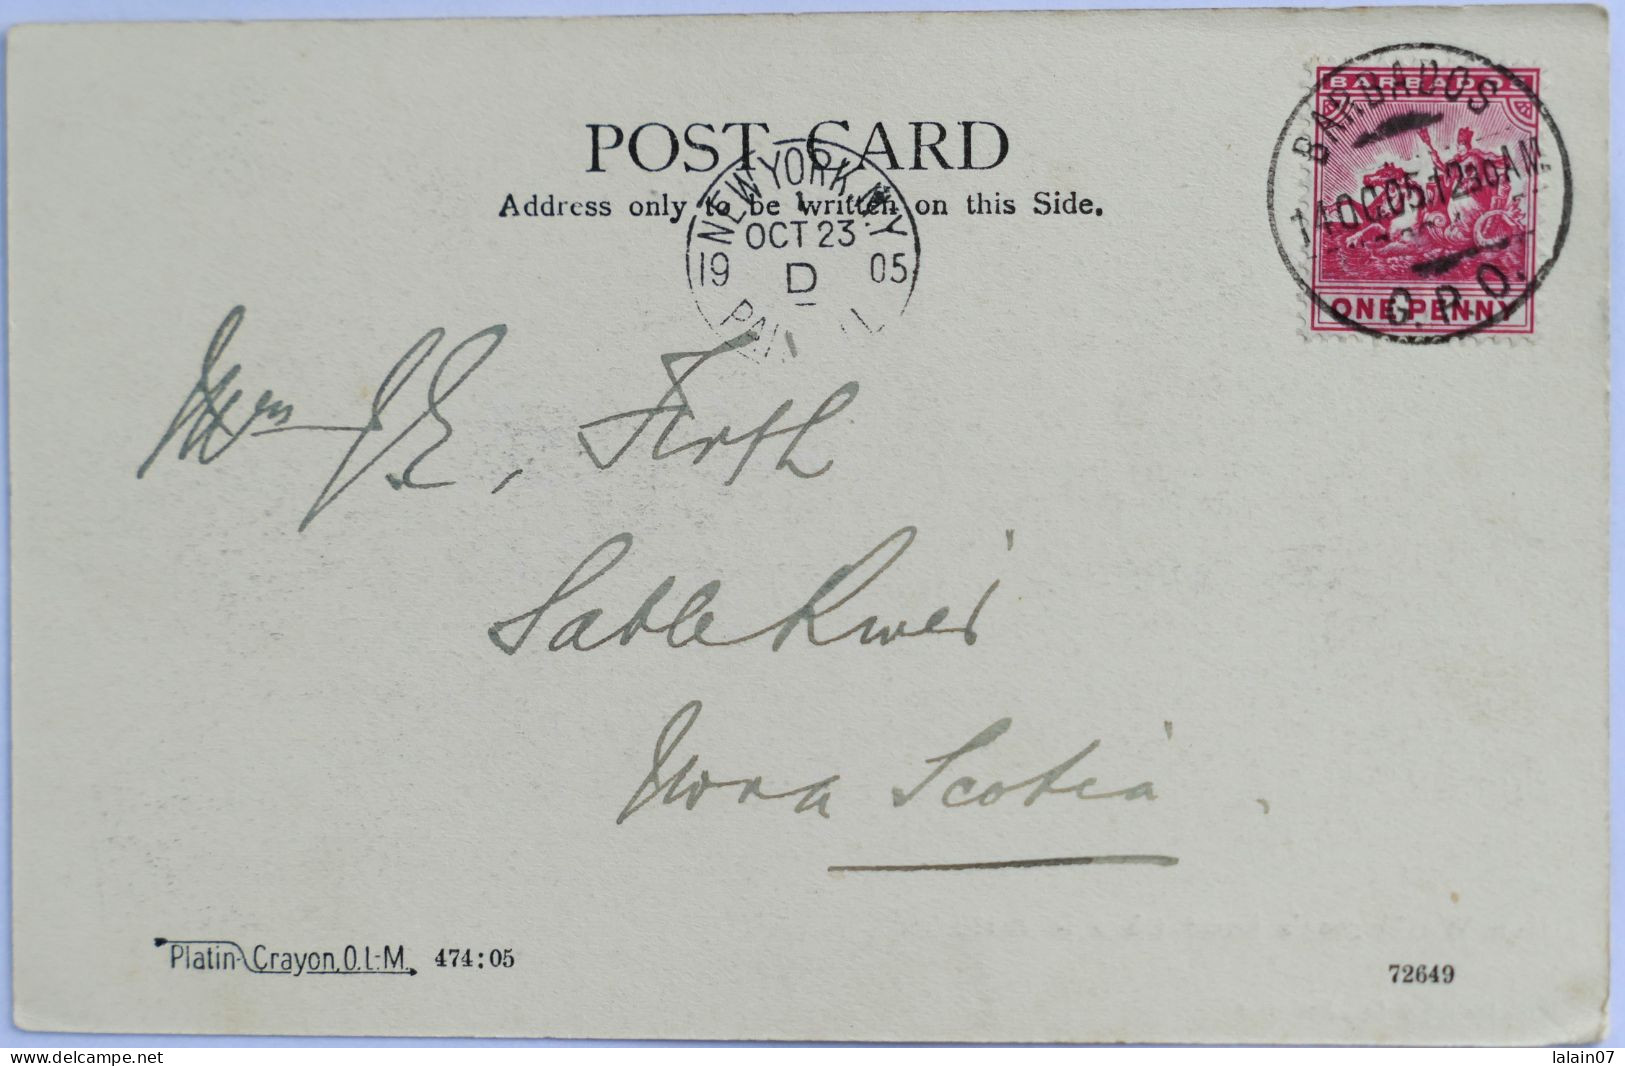 C. P. A. : BARBADOS : Geo Washington's Home In Barbados, Horse Carriage, Stamp In 1905 - Barbados (Barbuda)